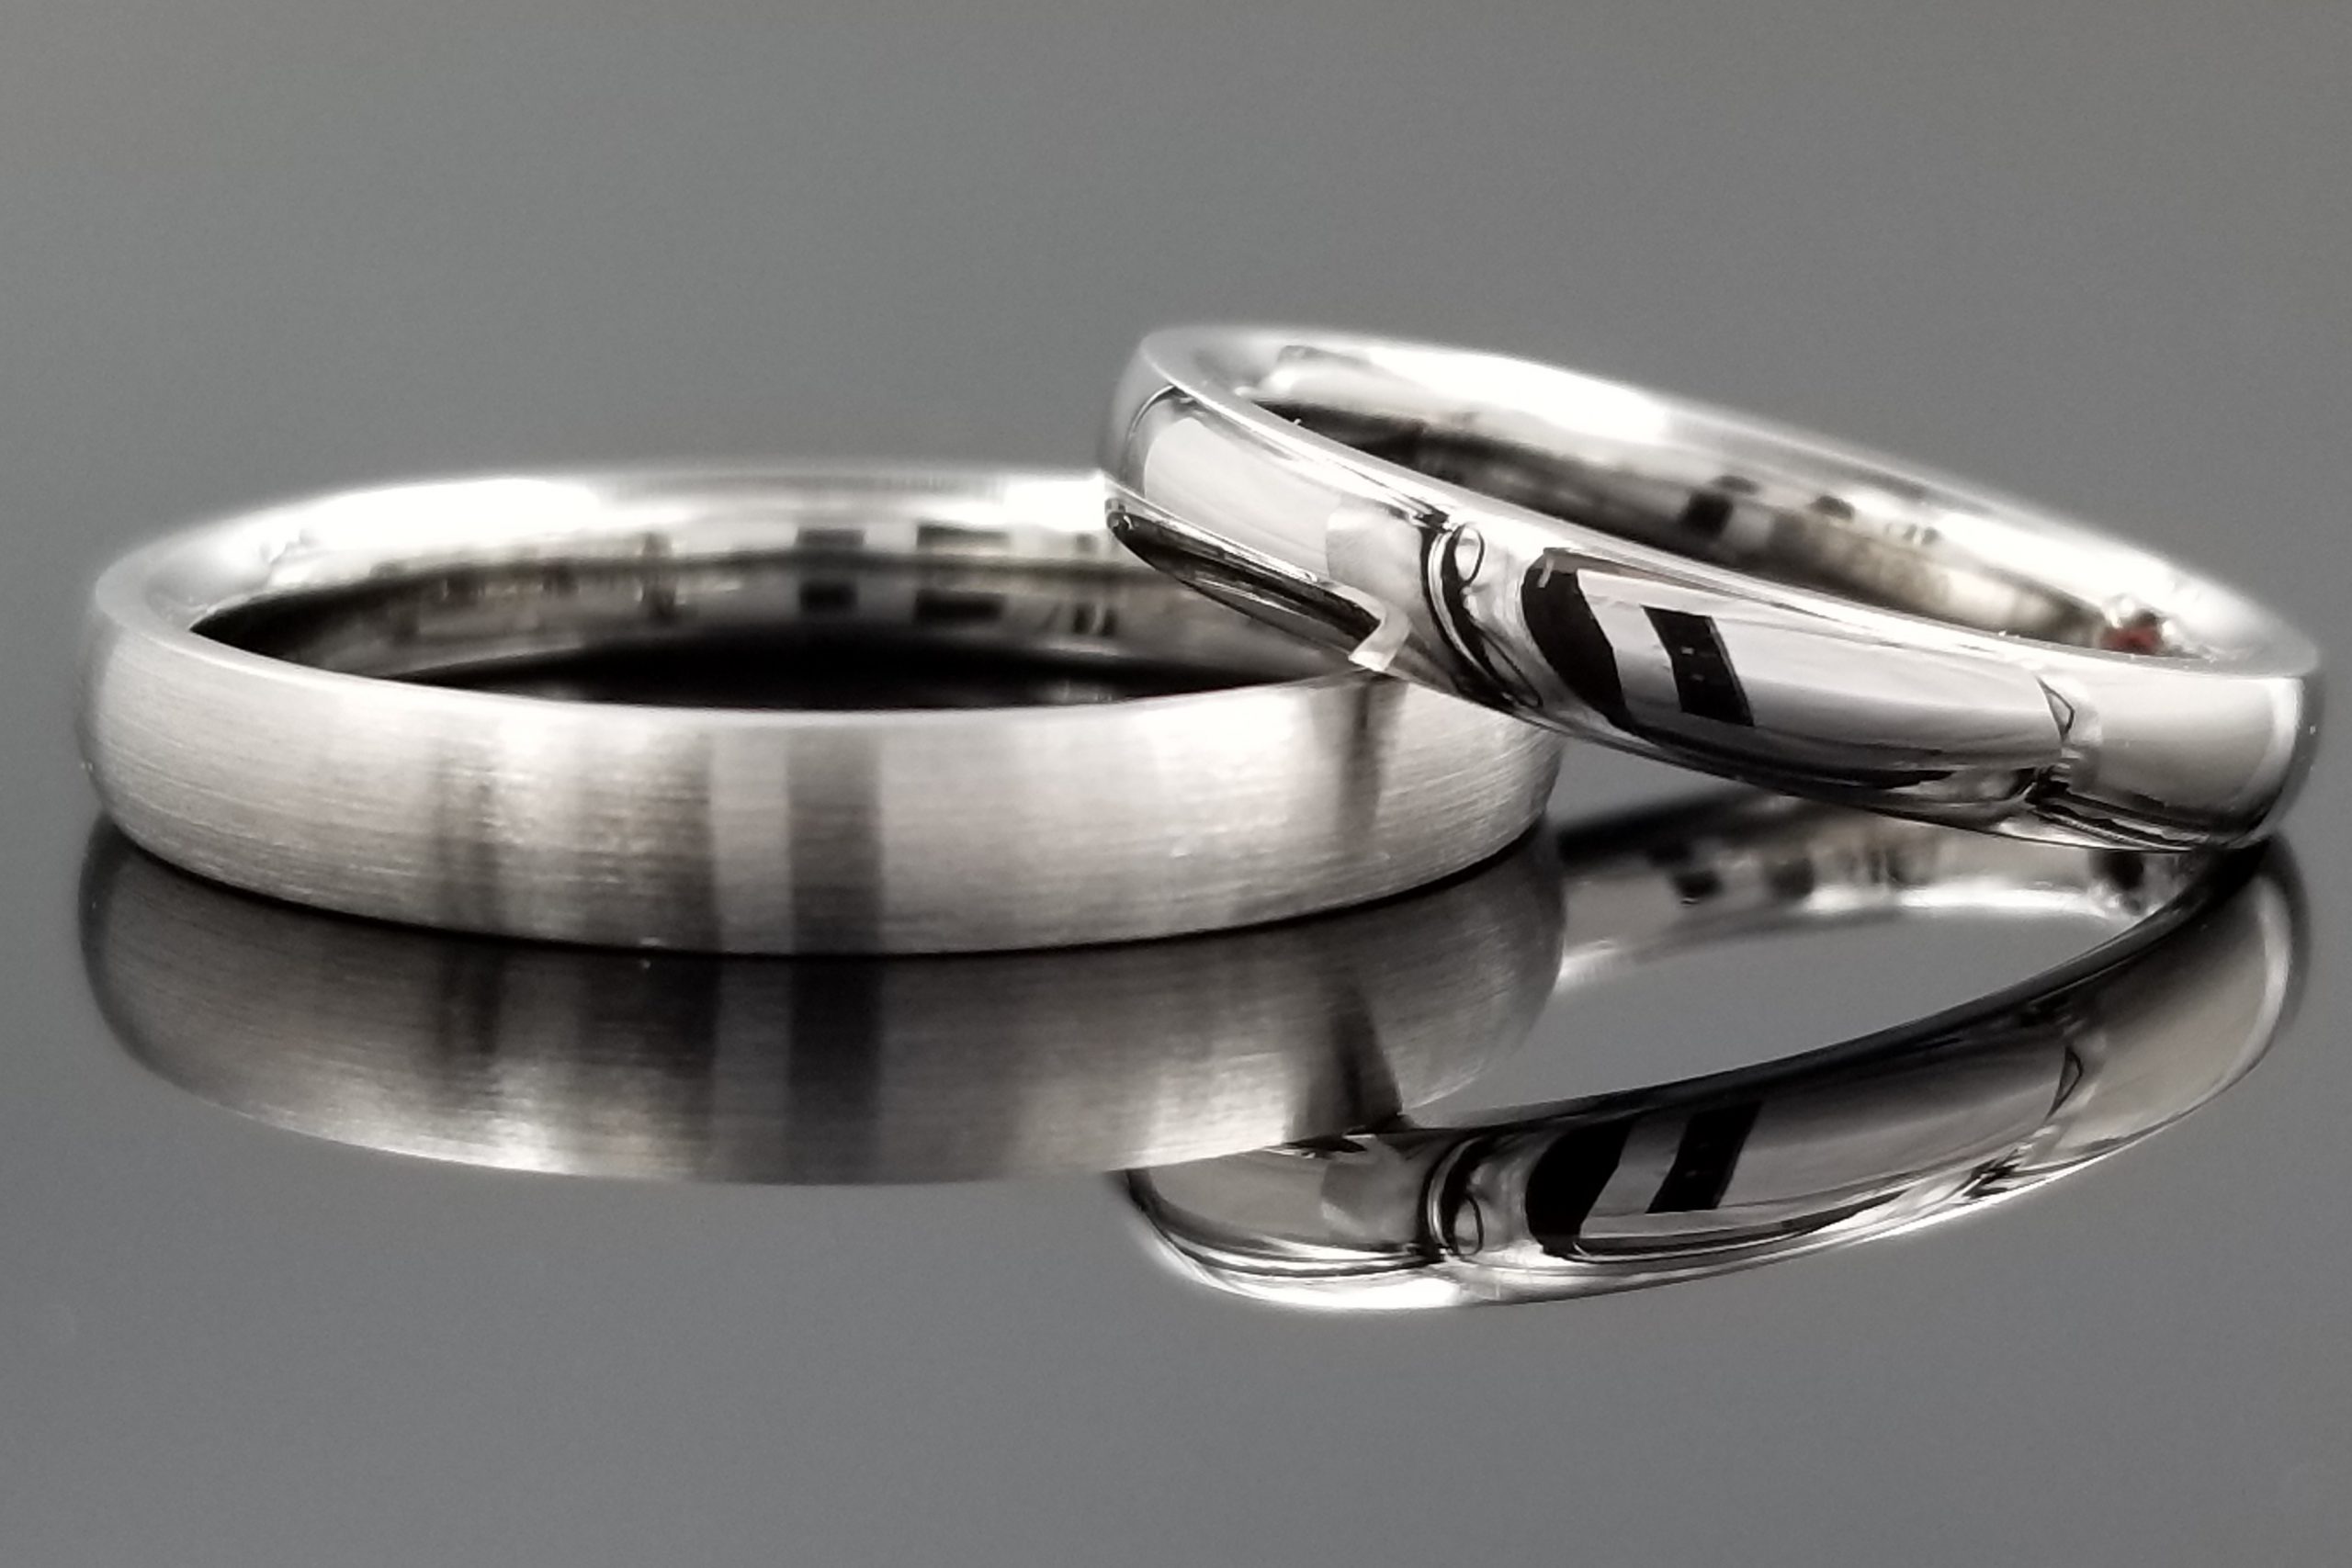 鍛造製法の美しさが際立つシンプルなご結婚指輪の中に・・のサムネイル